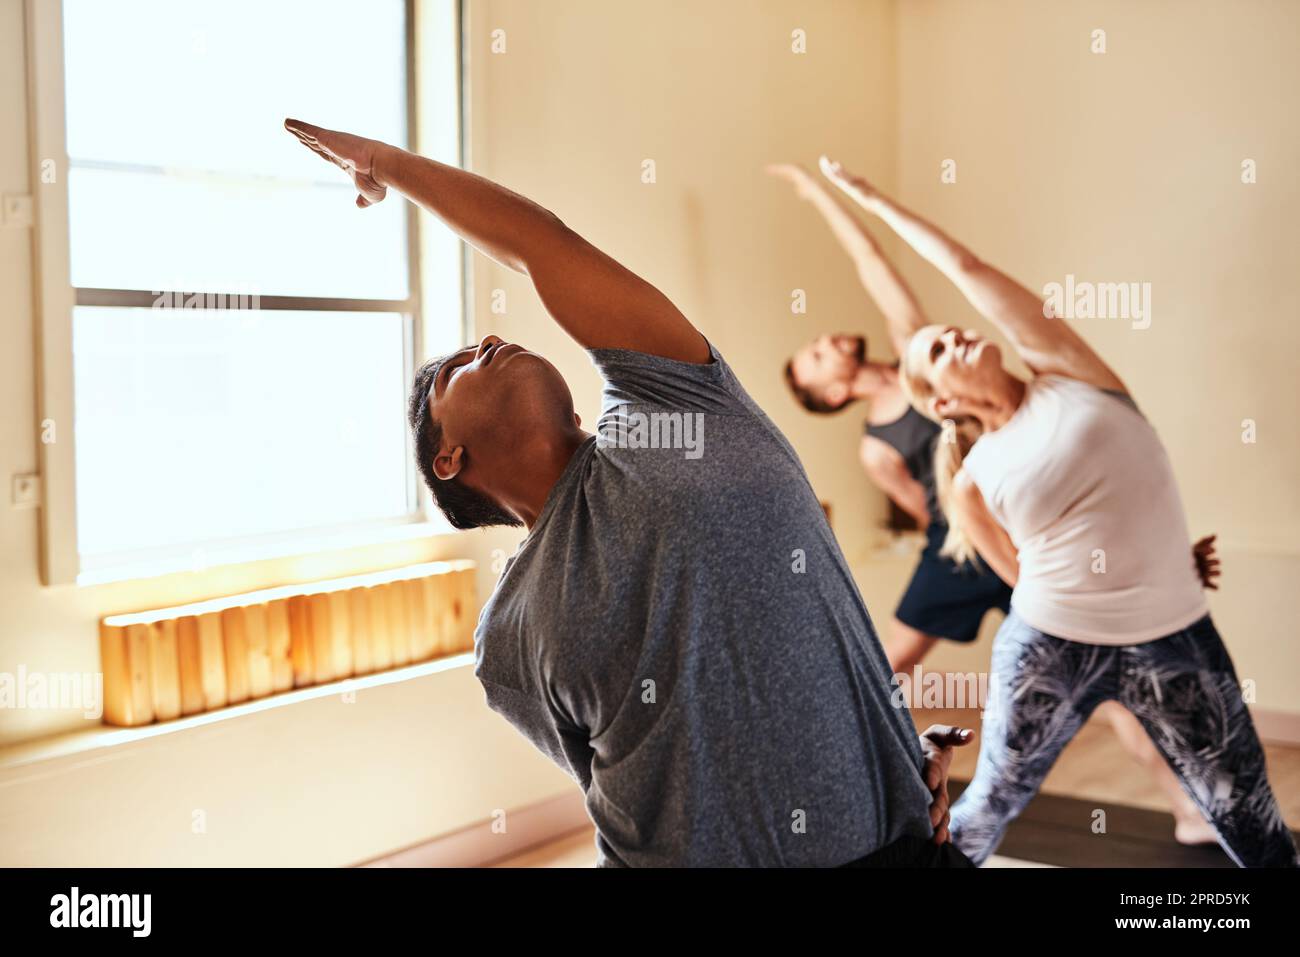 Lockern Sie den Körper auf, lockern Sie den Geist auf. Eine Gruppe junger Männer und Frauen, die in einem Fitnesskurs Yoga praktizieren. Stockfoto